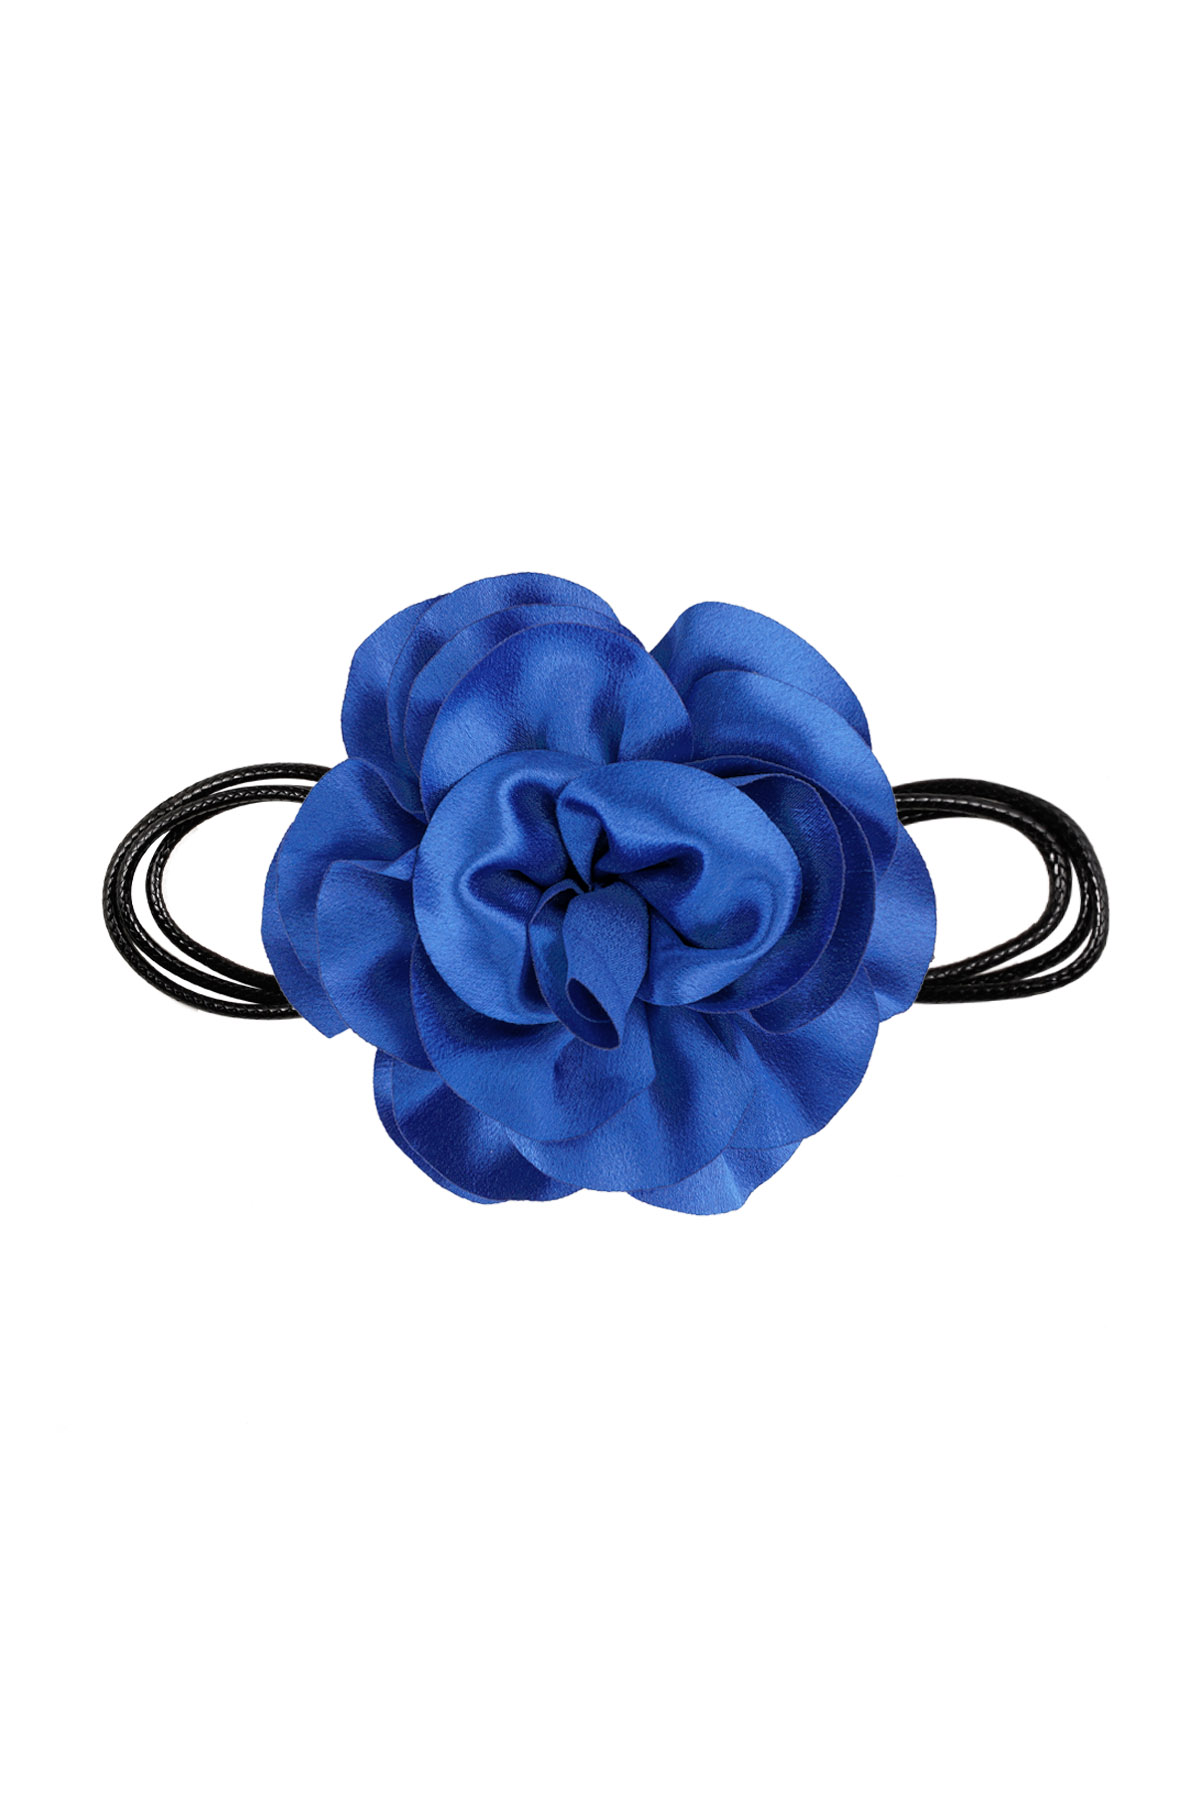 Kolye ipi parlak çiçek - parlak mavi h5 